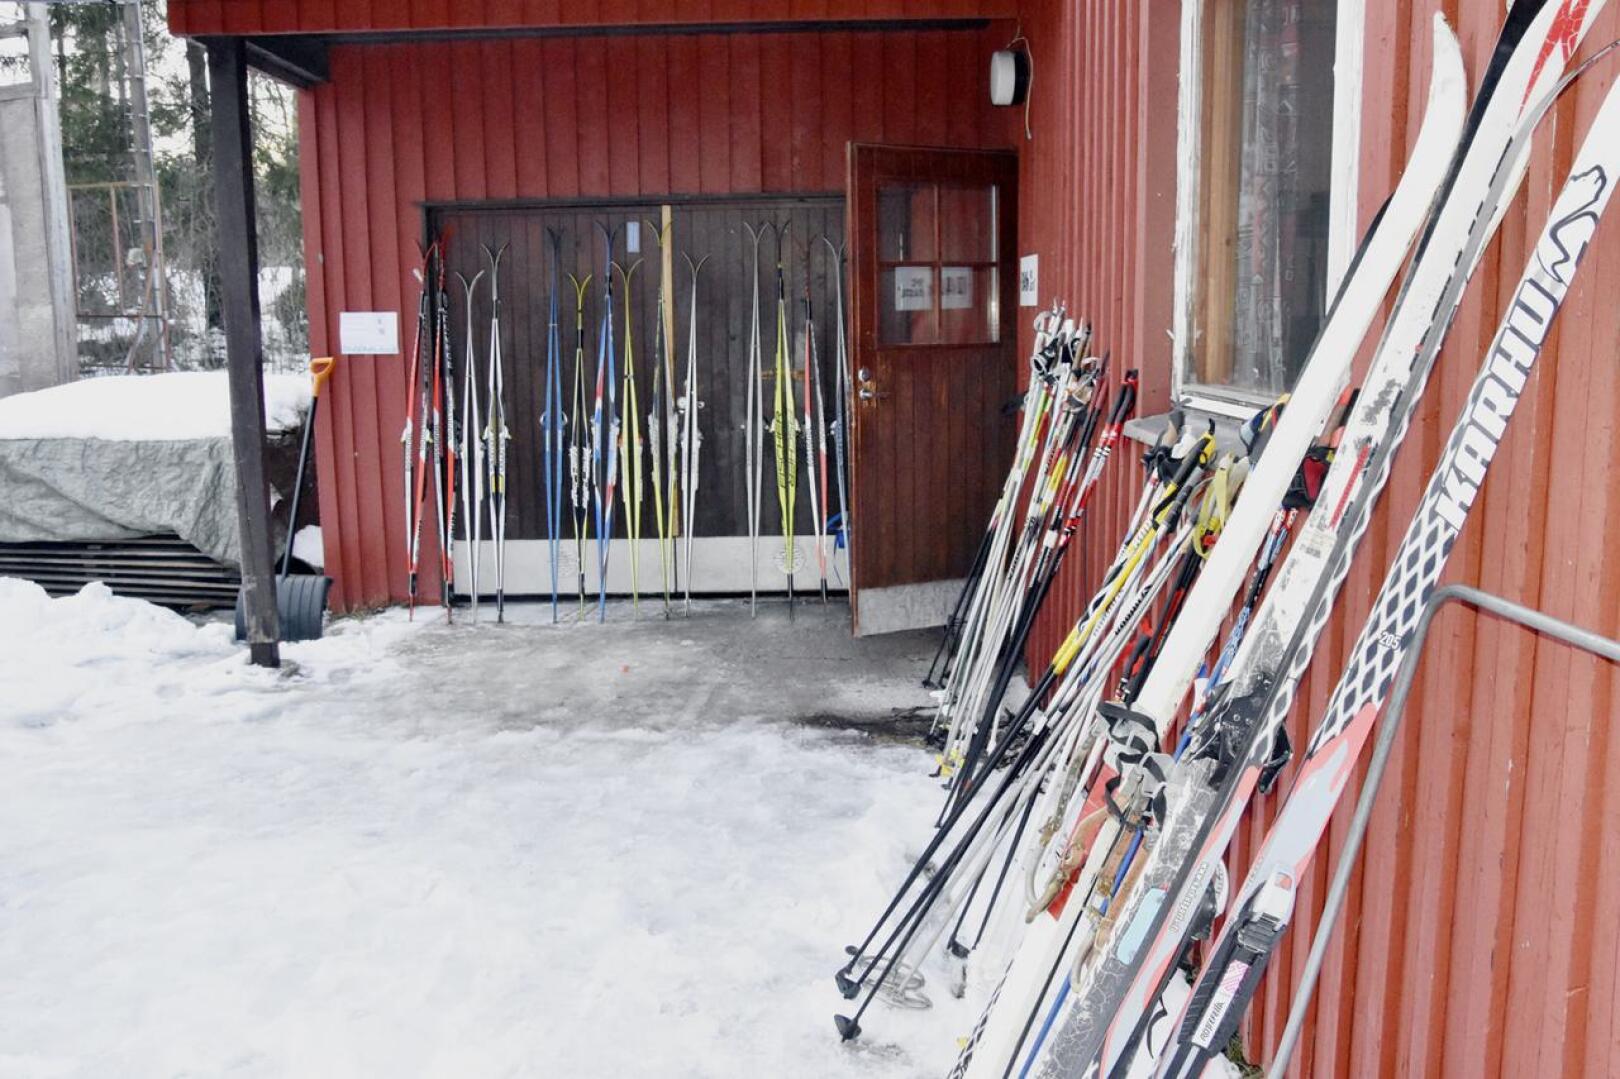 Muun muassa Vestersundinkylässä kaupunki hoitaa hiihtolatuja, jotka ovatkin perinteisesti ahkerassa käytössä. Tulevana talvena voi hiihtää hyvällä omallatunnolla, jos maksaa 25 euron vapaaehtoisen kausimaksun.